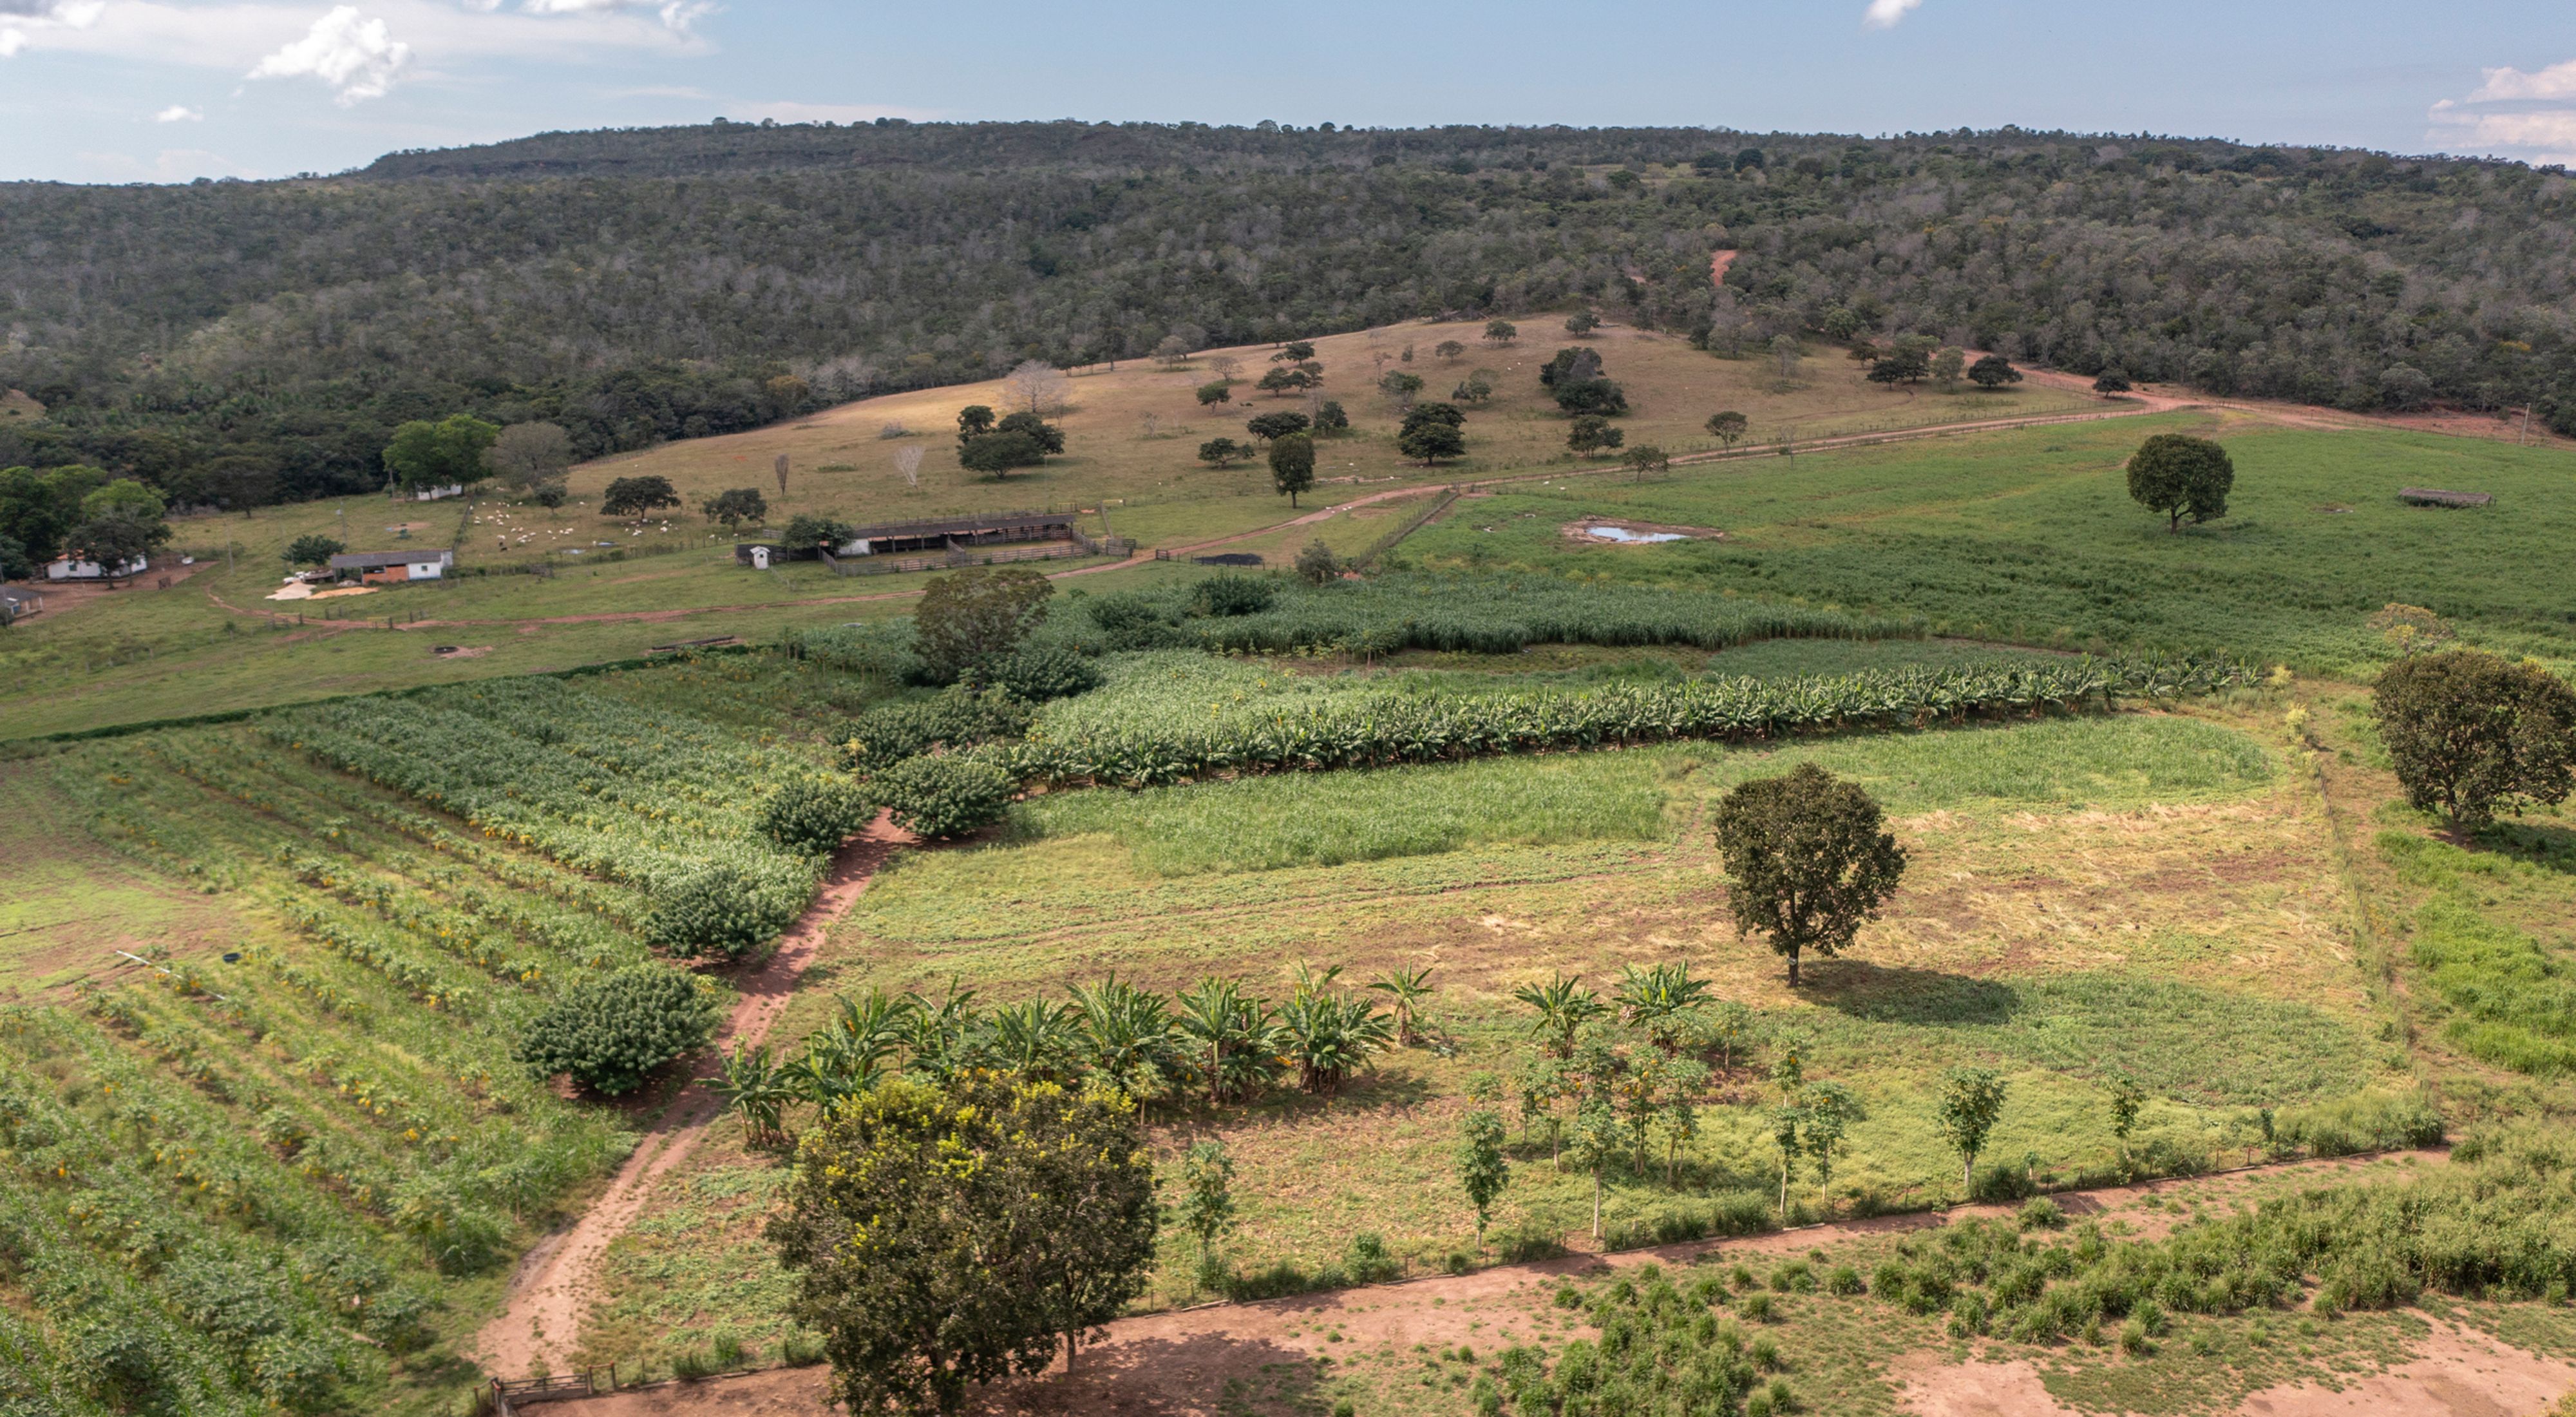 Vista aérea de propriedade rural no Mato Grosso.